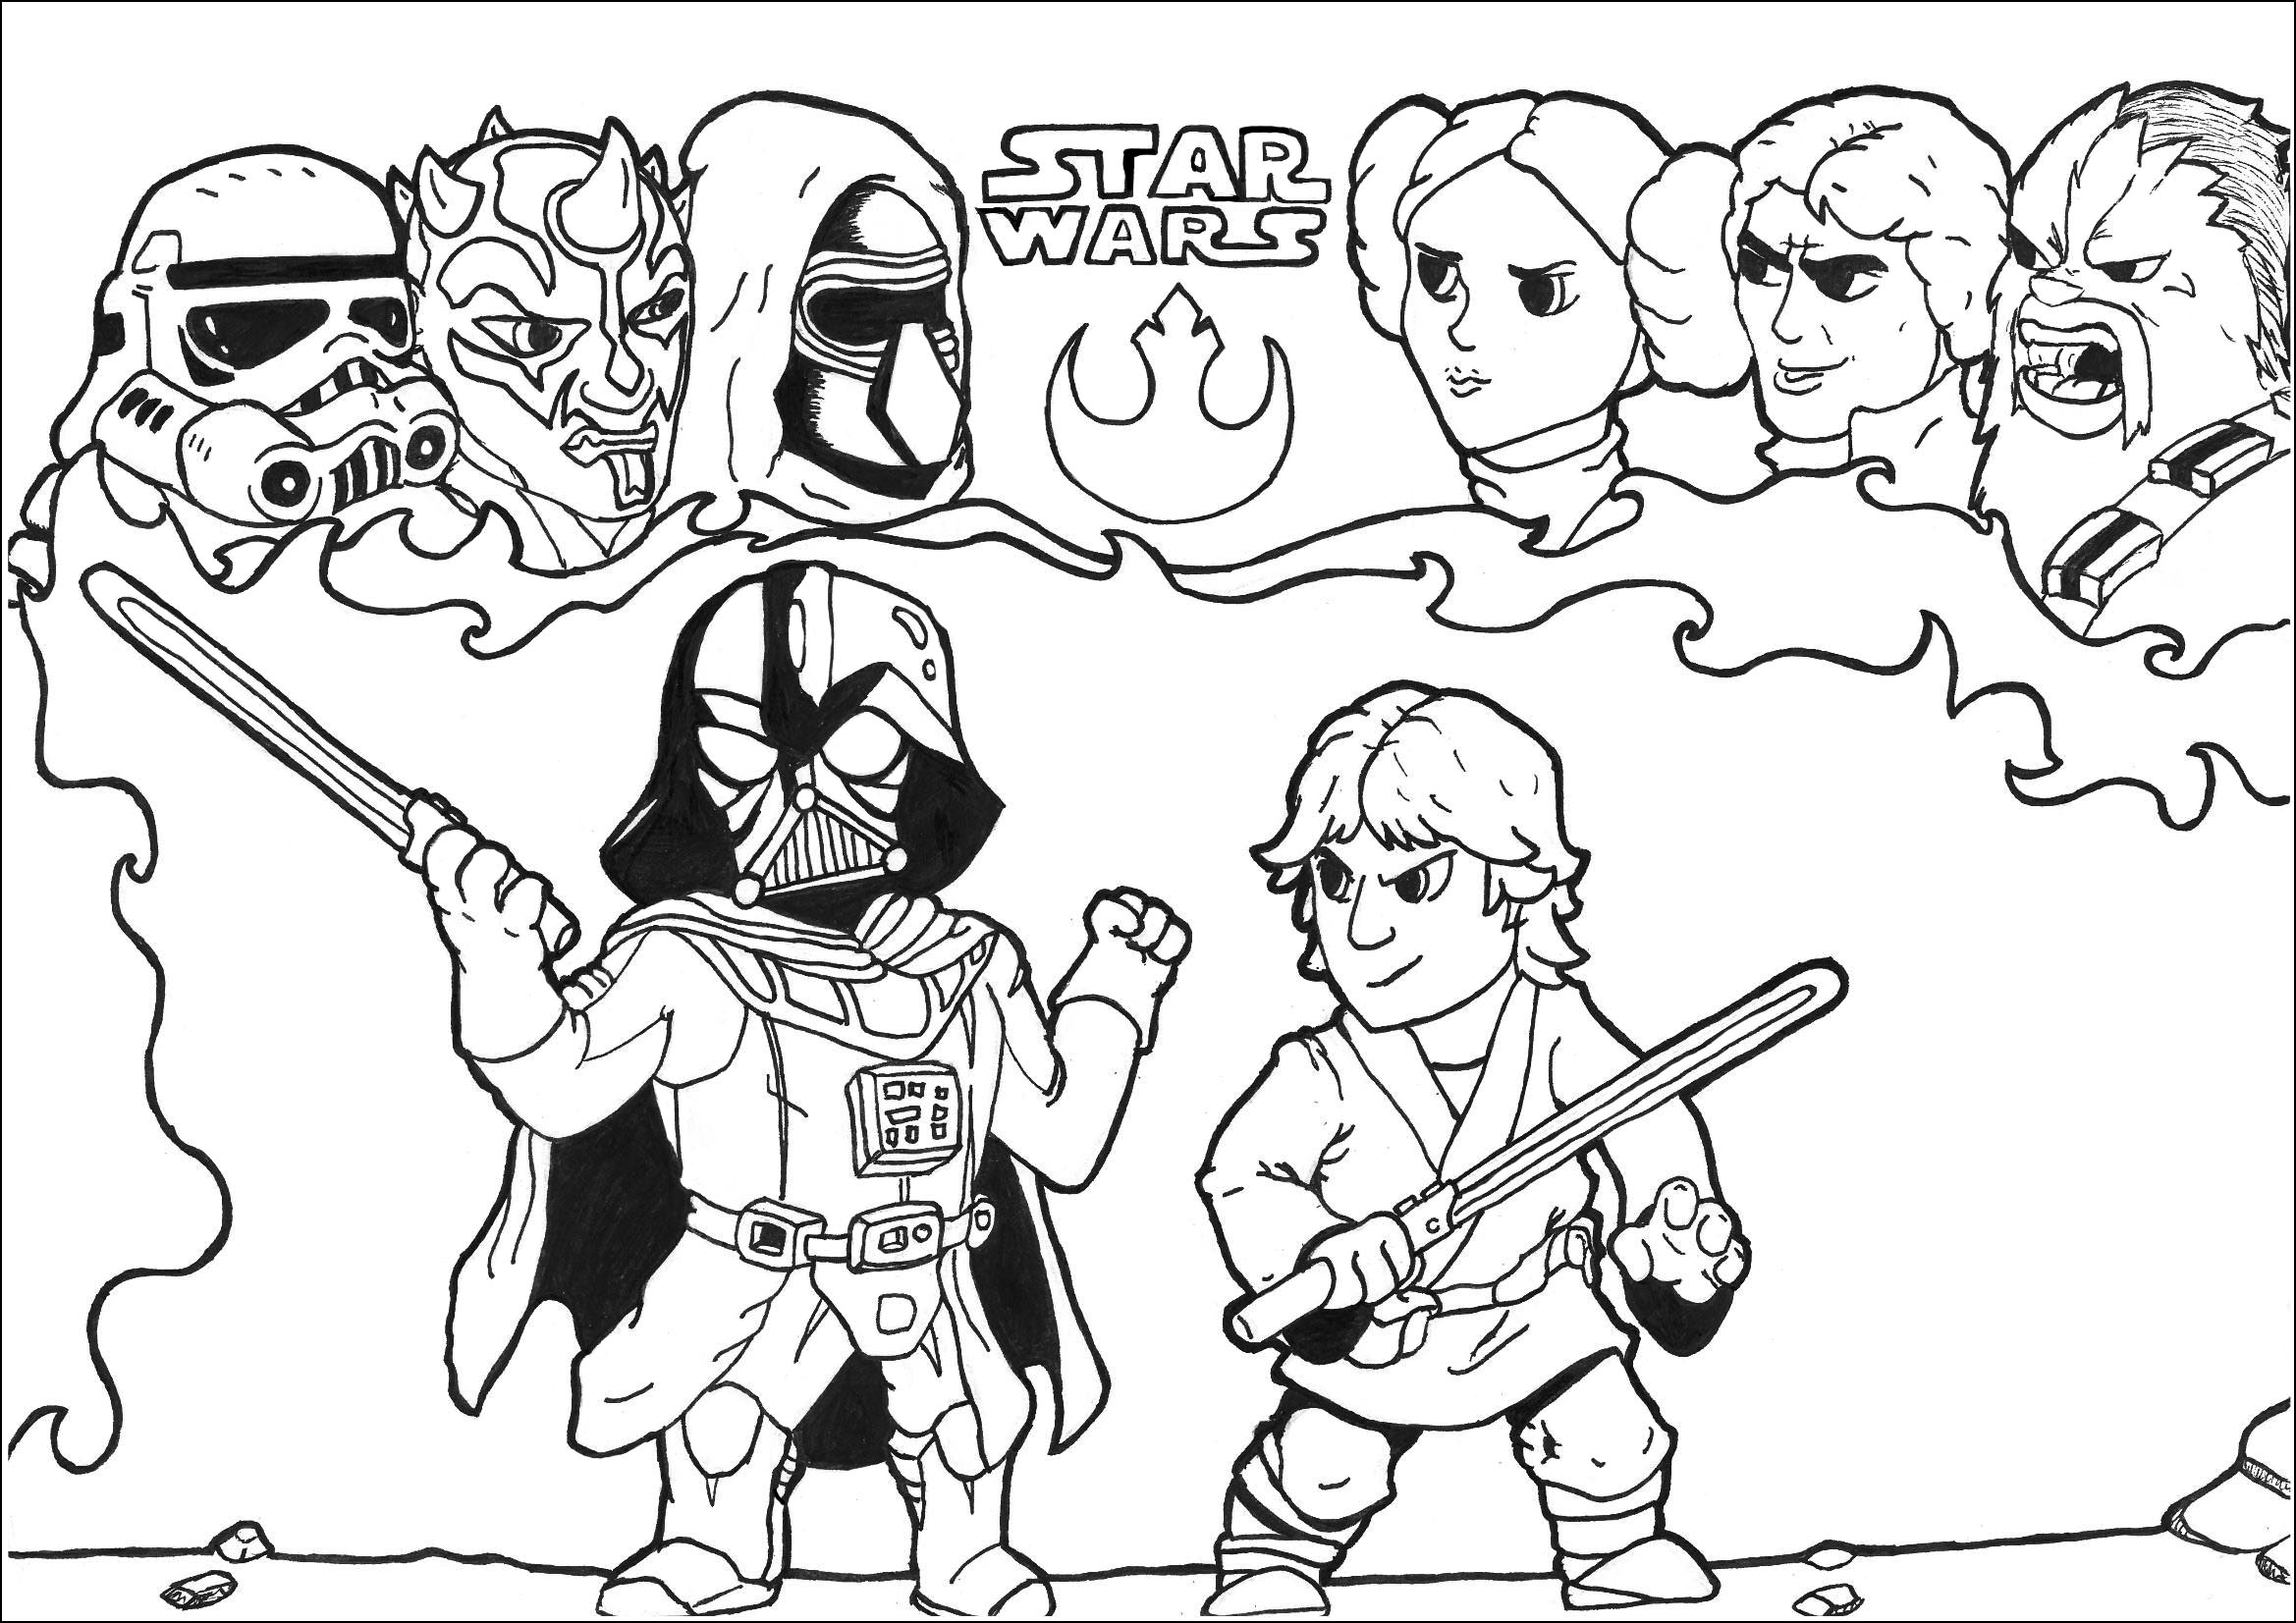 Luke vs Darth Vader y otros personajes de la Saga